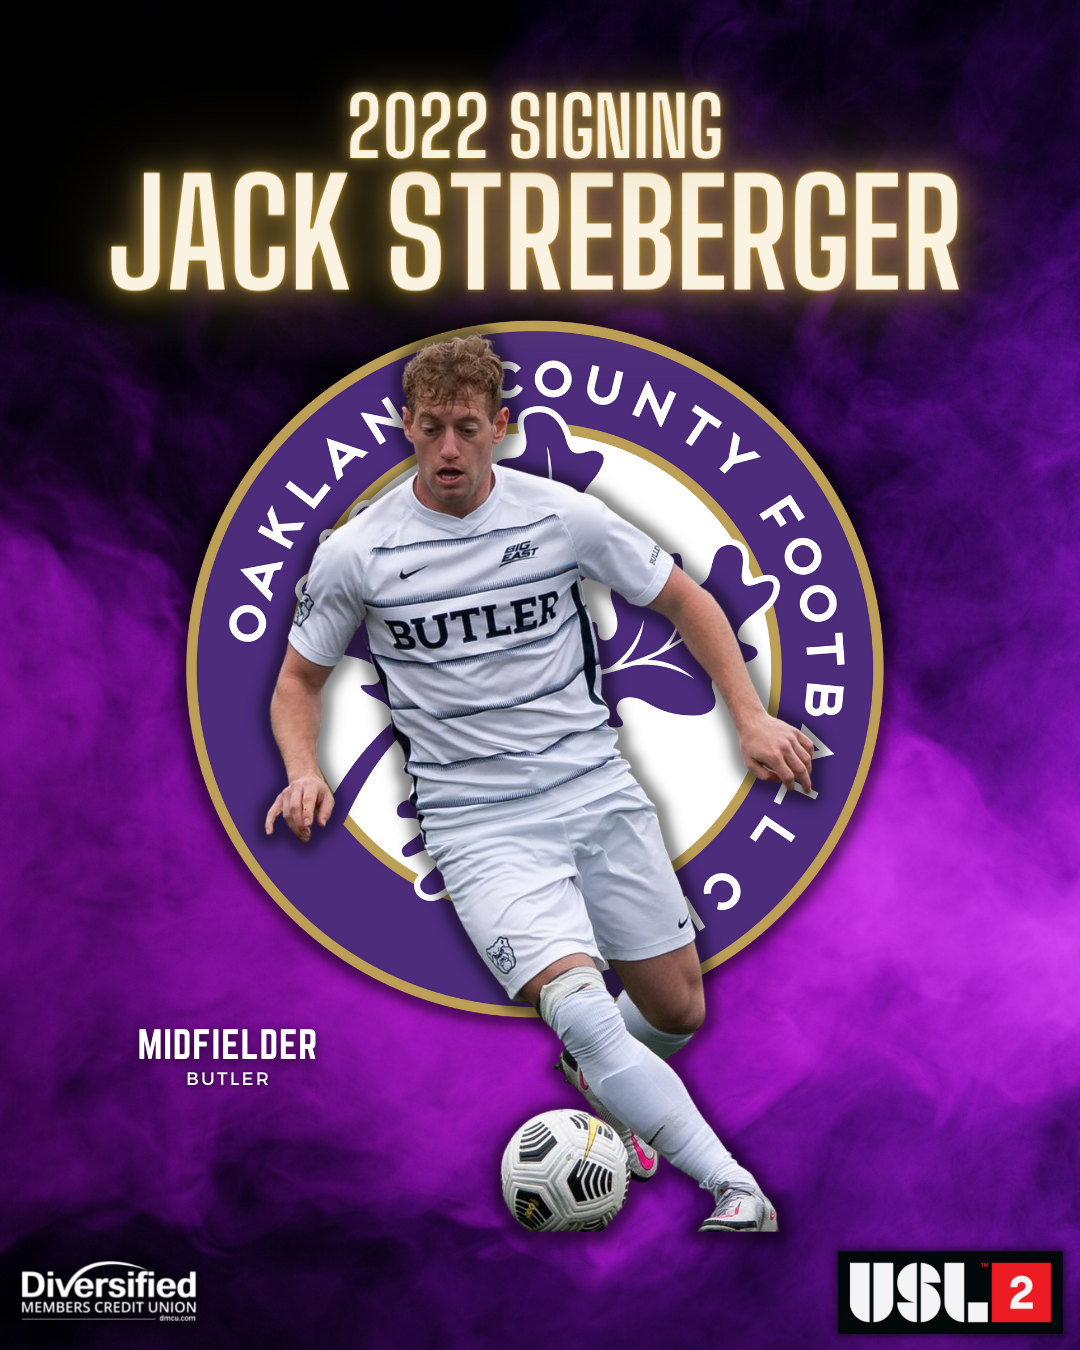 Jack Streberger